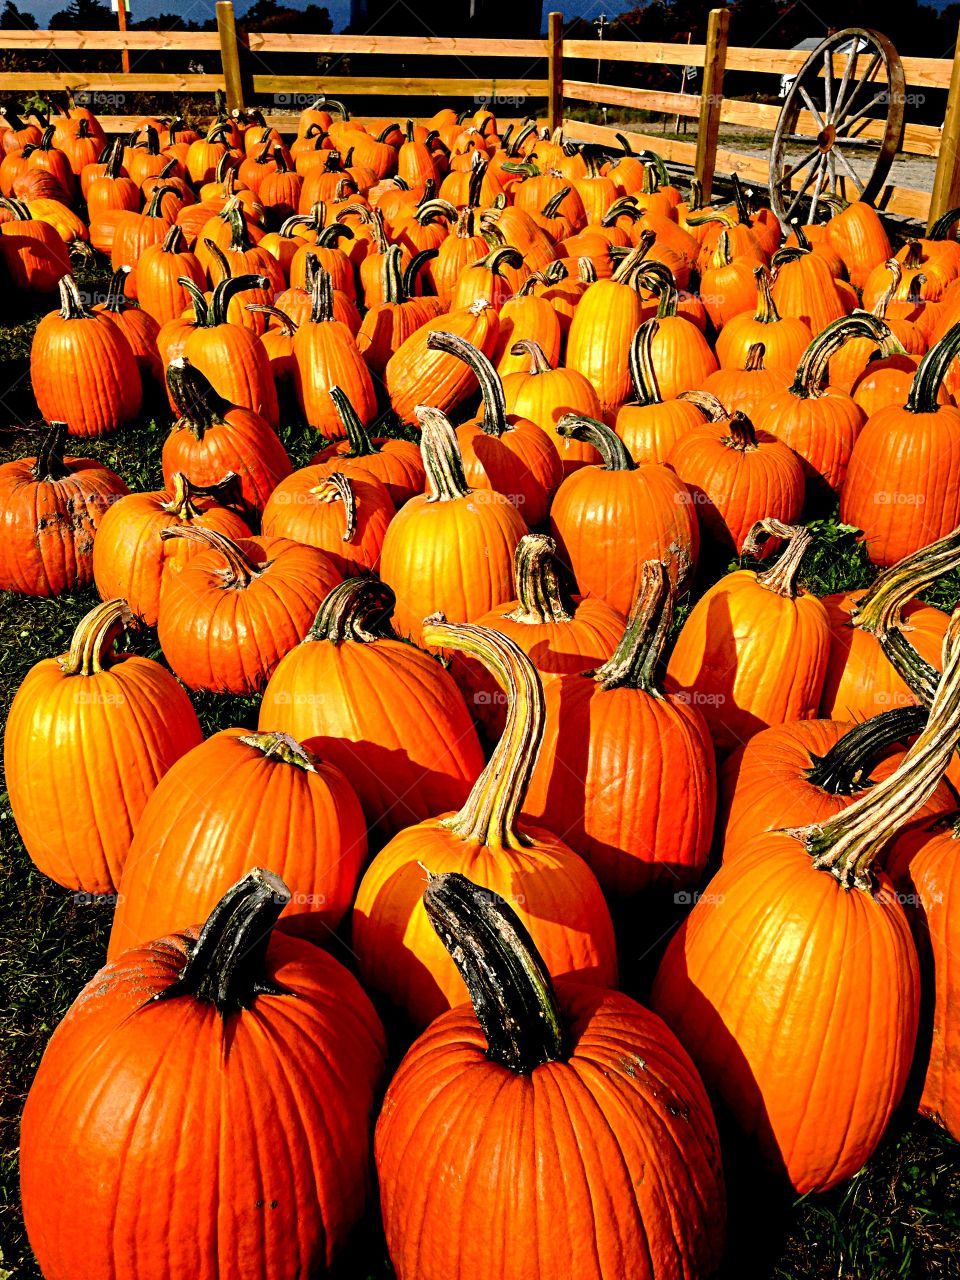 Abundance of pumpkin